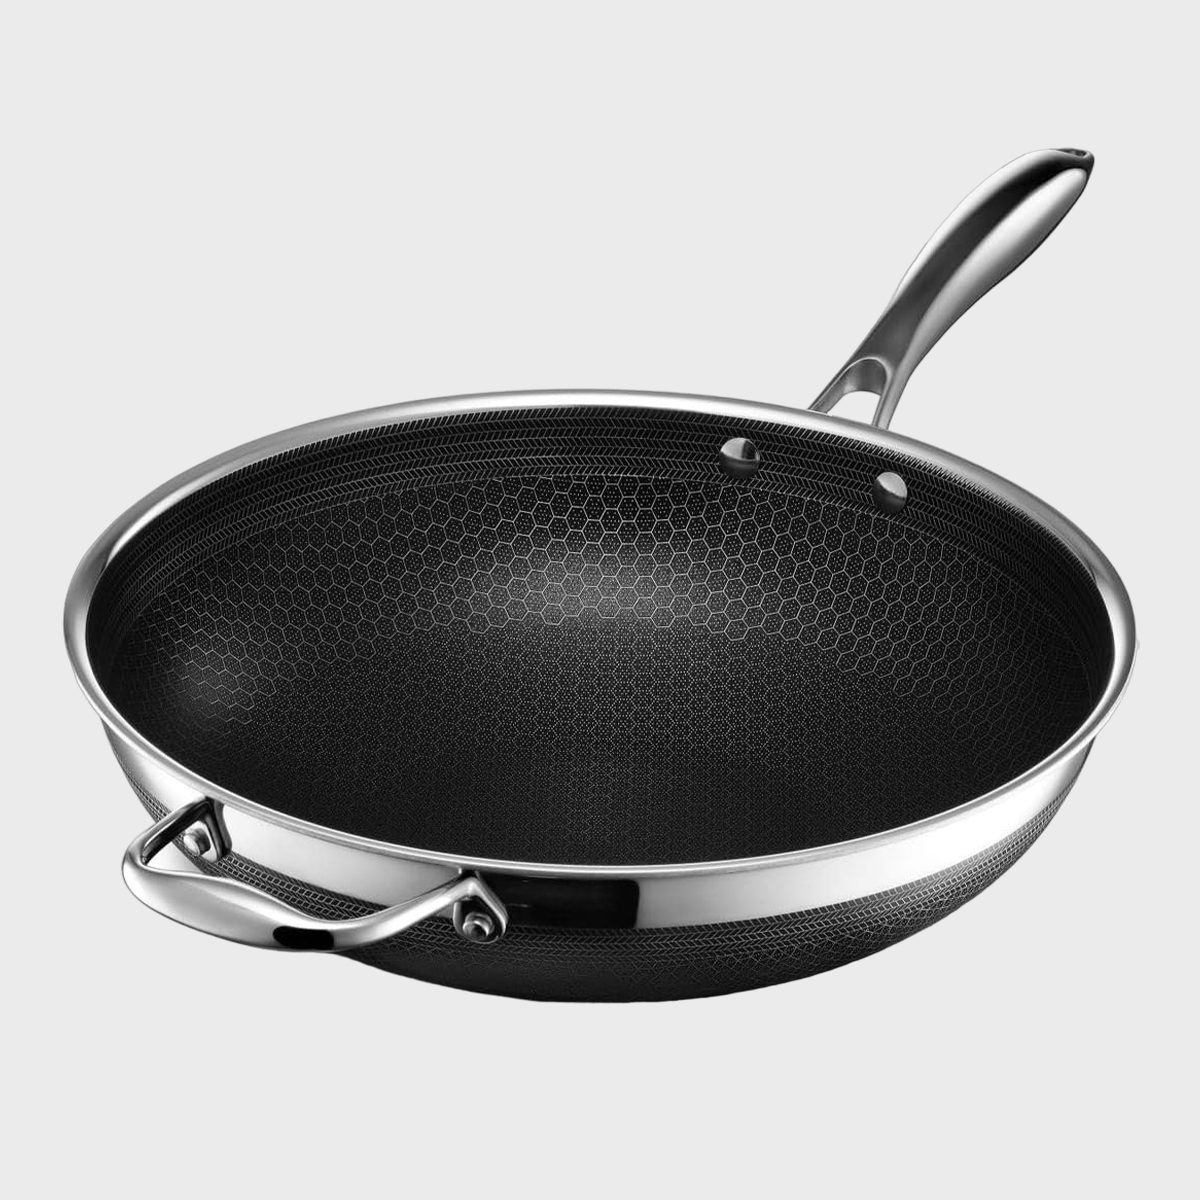 Hexclad Frying Pan